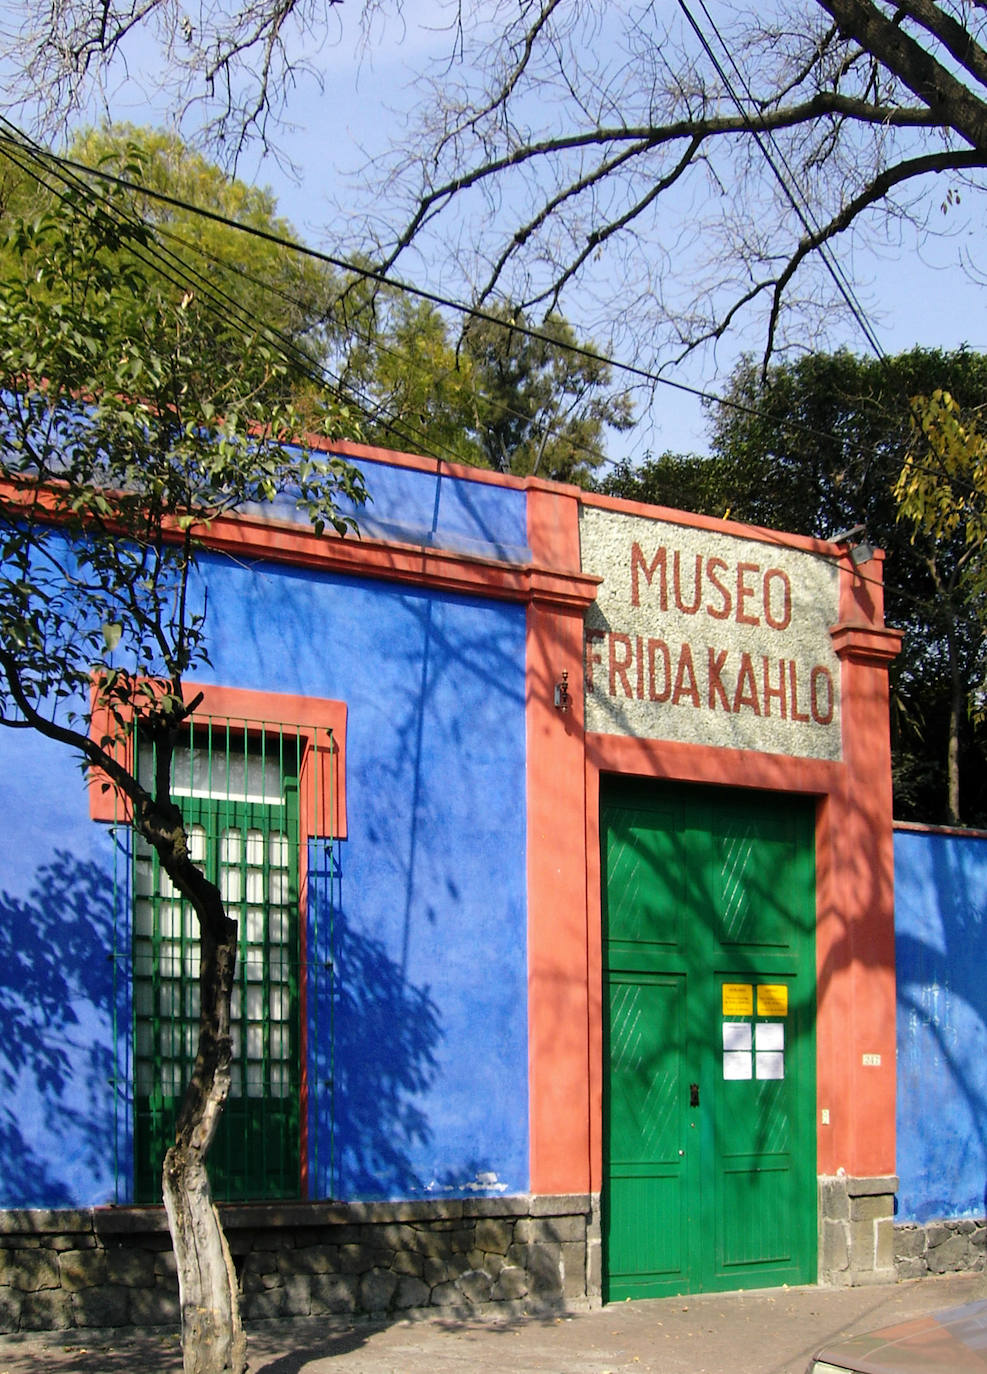 2.- Frida Kahlo (México) | La casa azul, como también es conocida, se encuentra en el corazón de uno de los barrios más antiguos de la Ciudad de México; Coyoacán. Allí fue donde la famosa pintora nació y murió. Cuatro años después de su muerte, en 1958, se convirtió en museo.